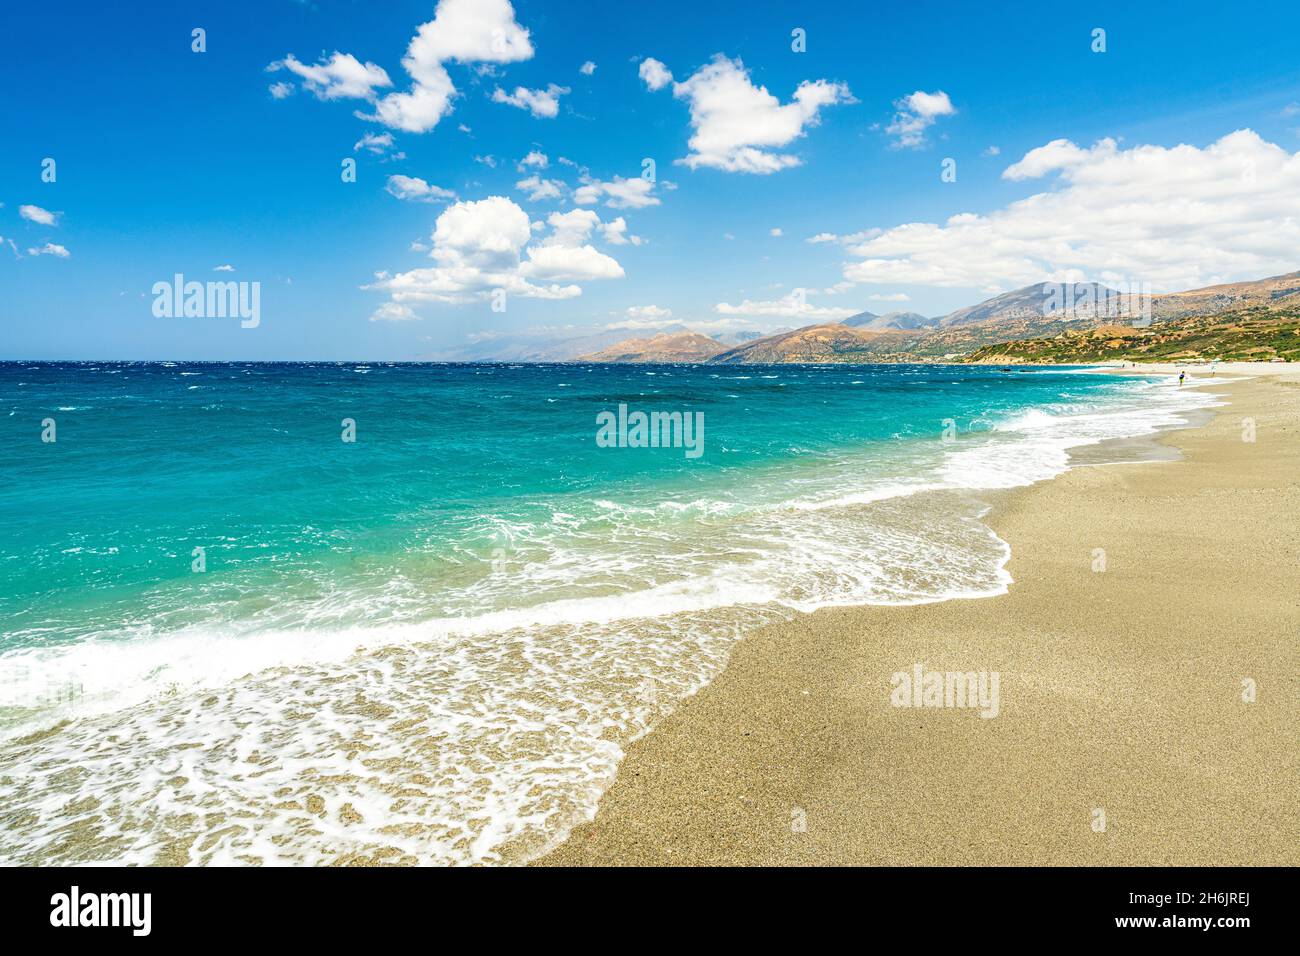 Onde di mare limpido turchese che si infrangono sulla sabbia bianca della spiaggia di Triopetra, Plakias, Creta isola, Isole Greche, Grecia, Europa Foto Stock